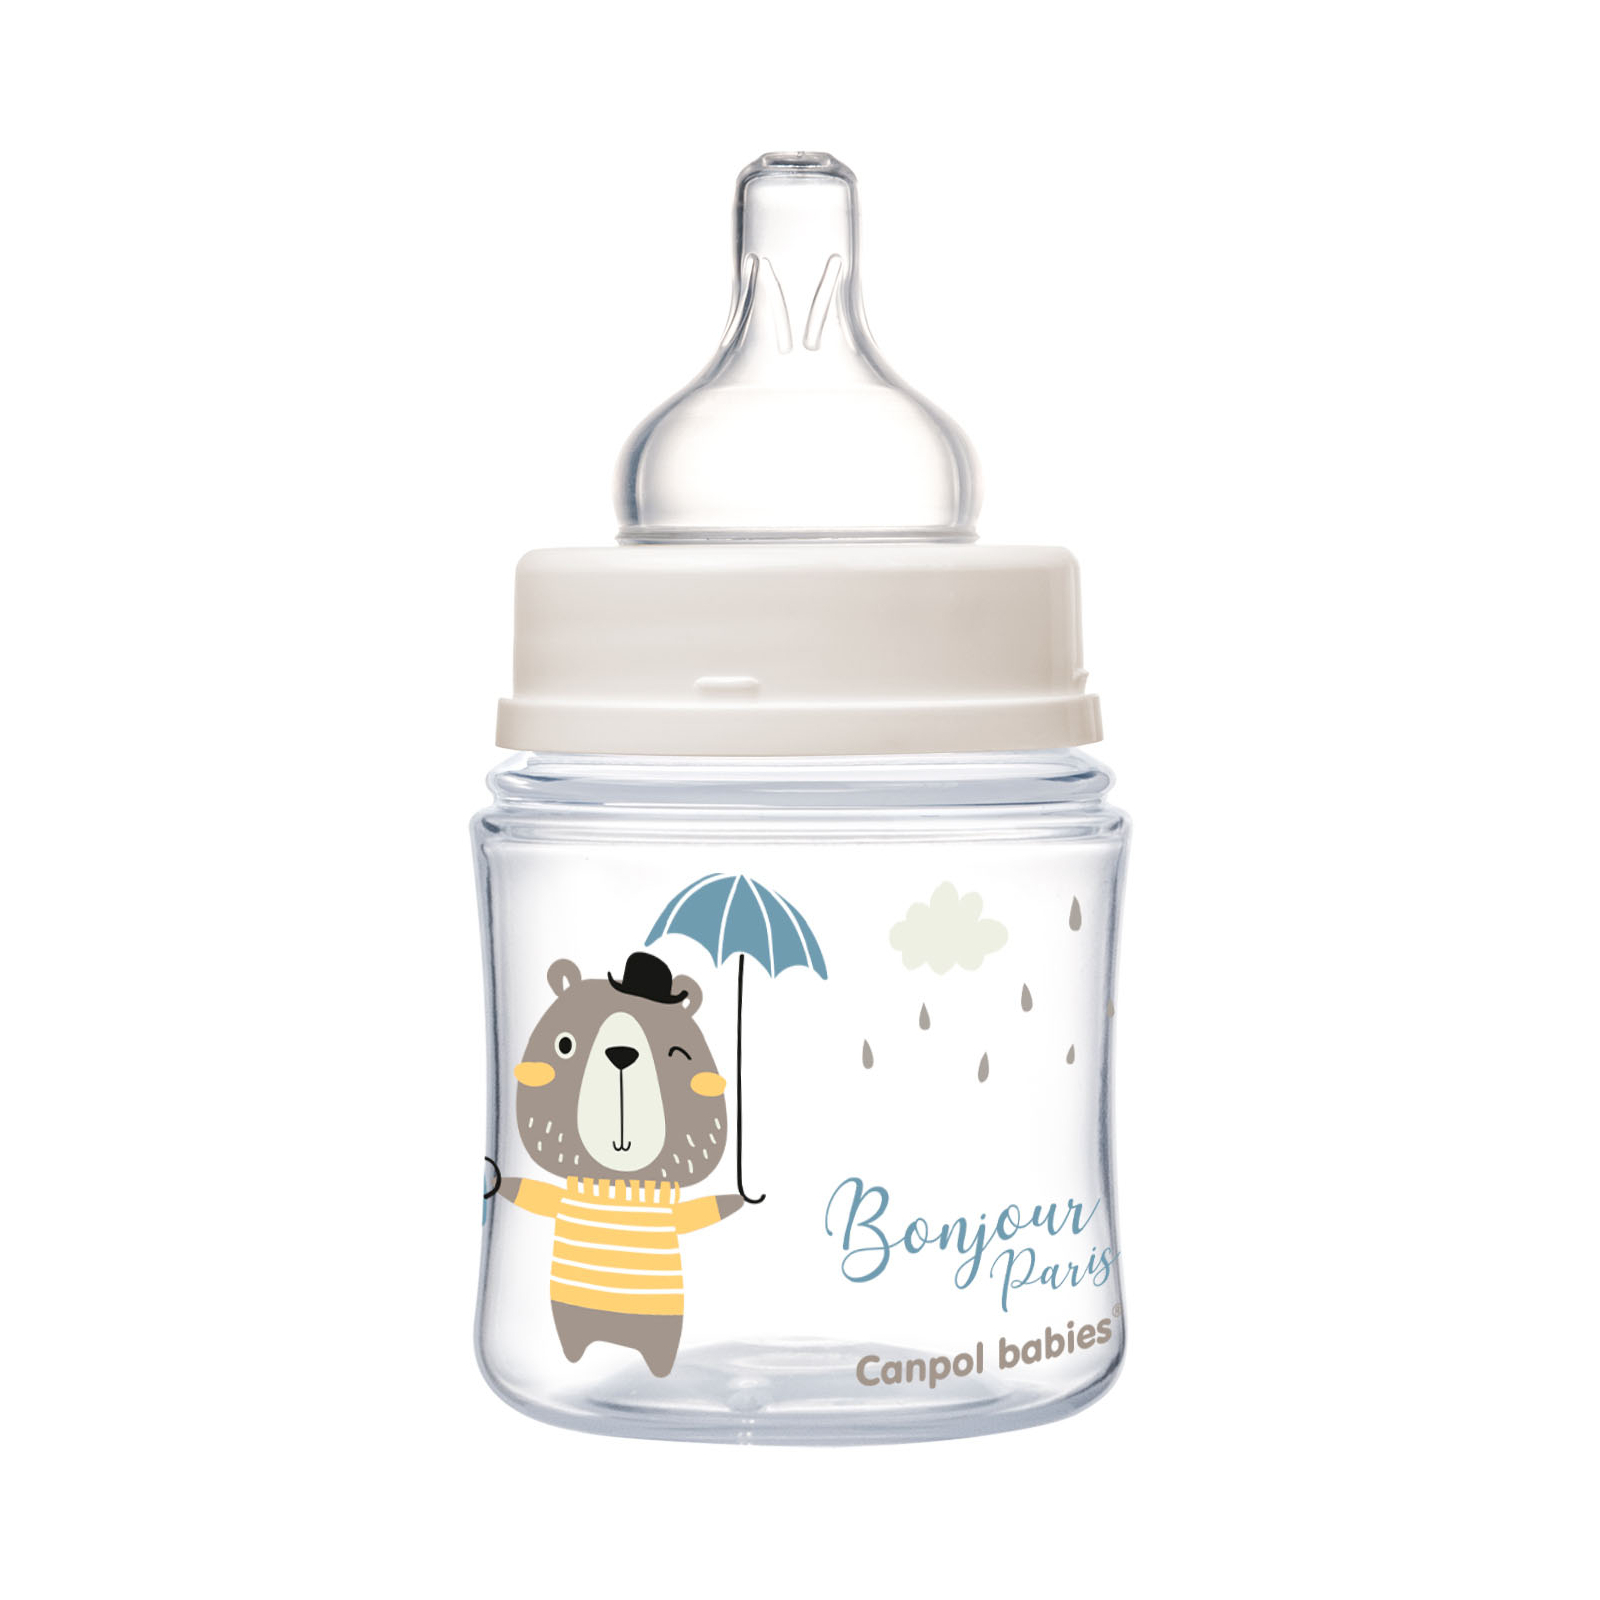 Бутылочка для кормления Canpol babies Bonjour Paris с широким отверстием 120 мл Розовая (35/231_pin) изображение 3